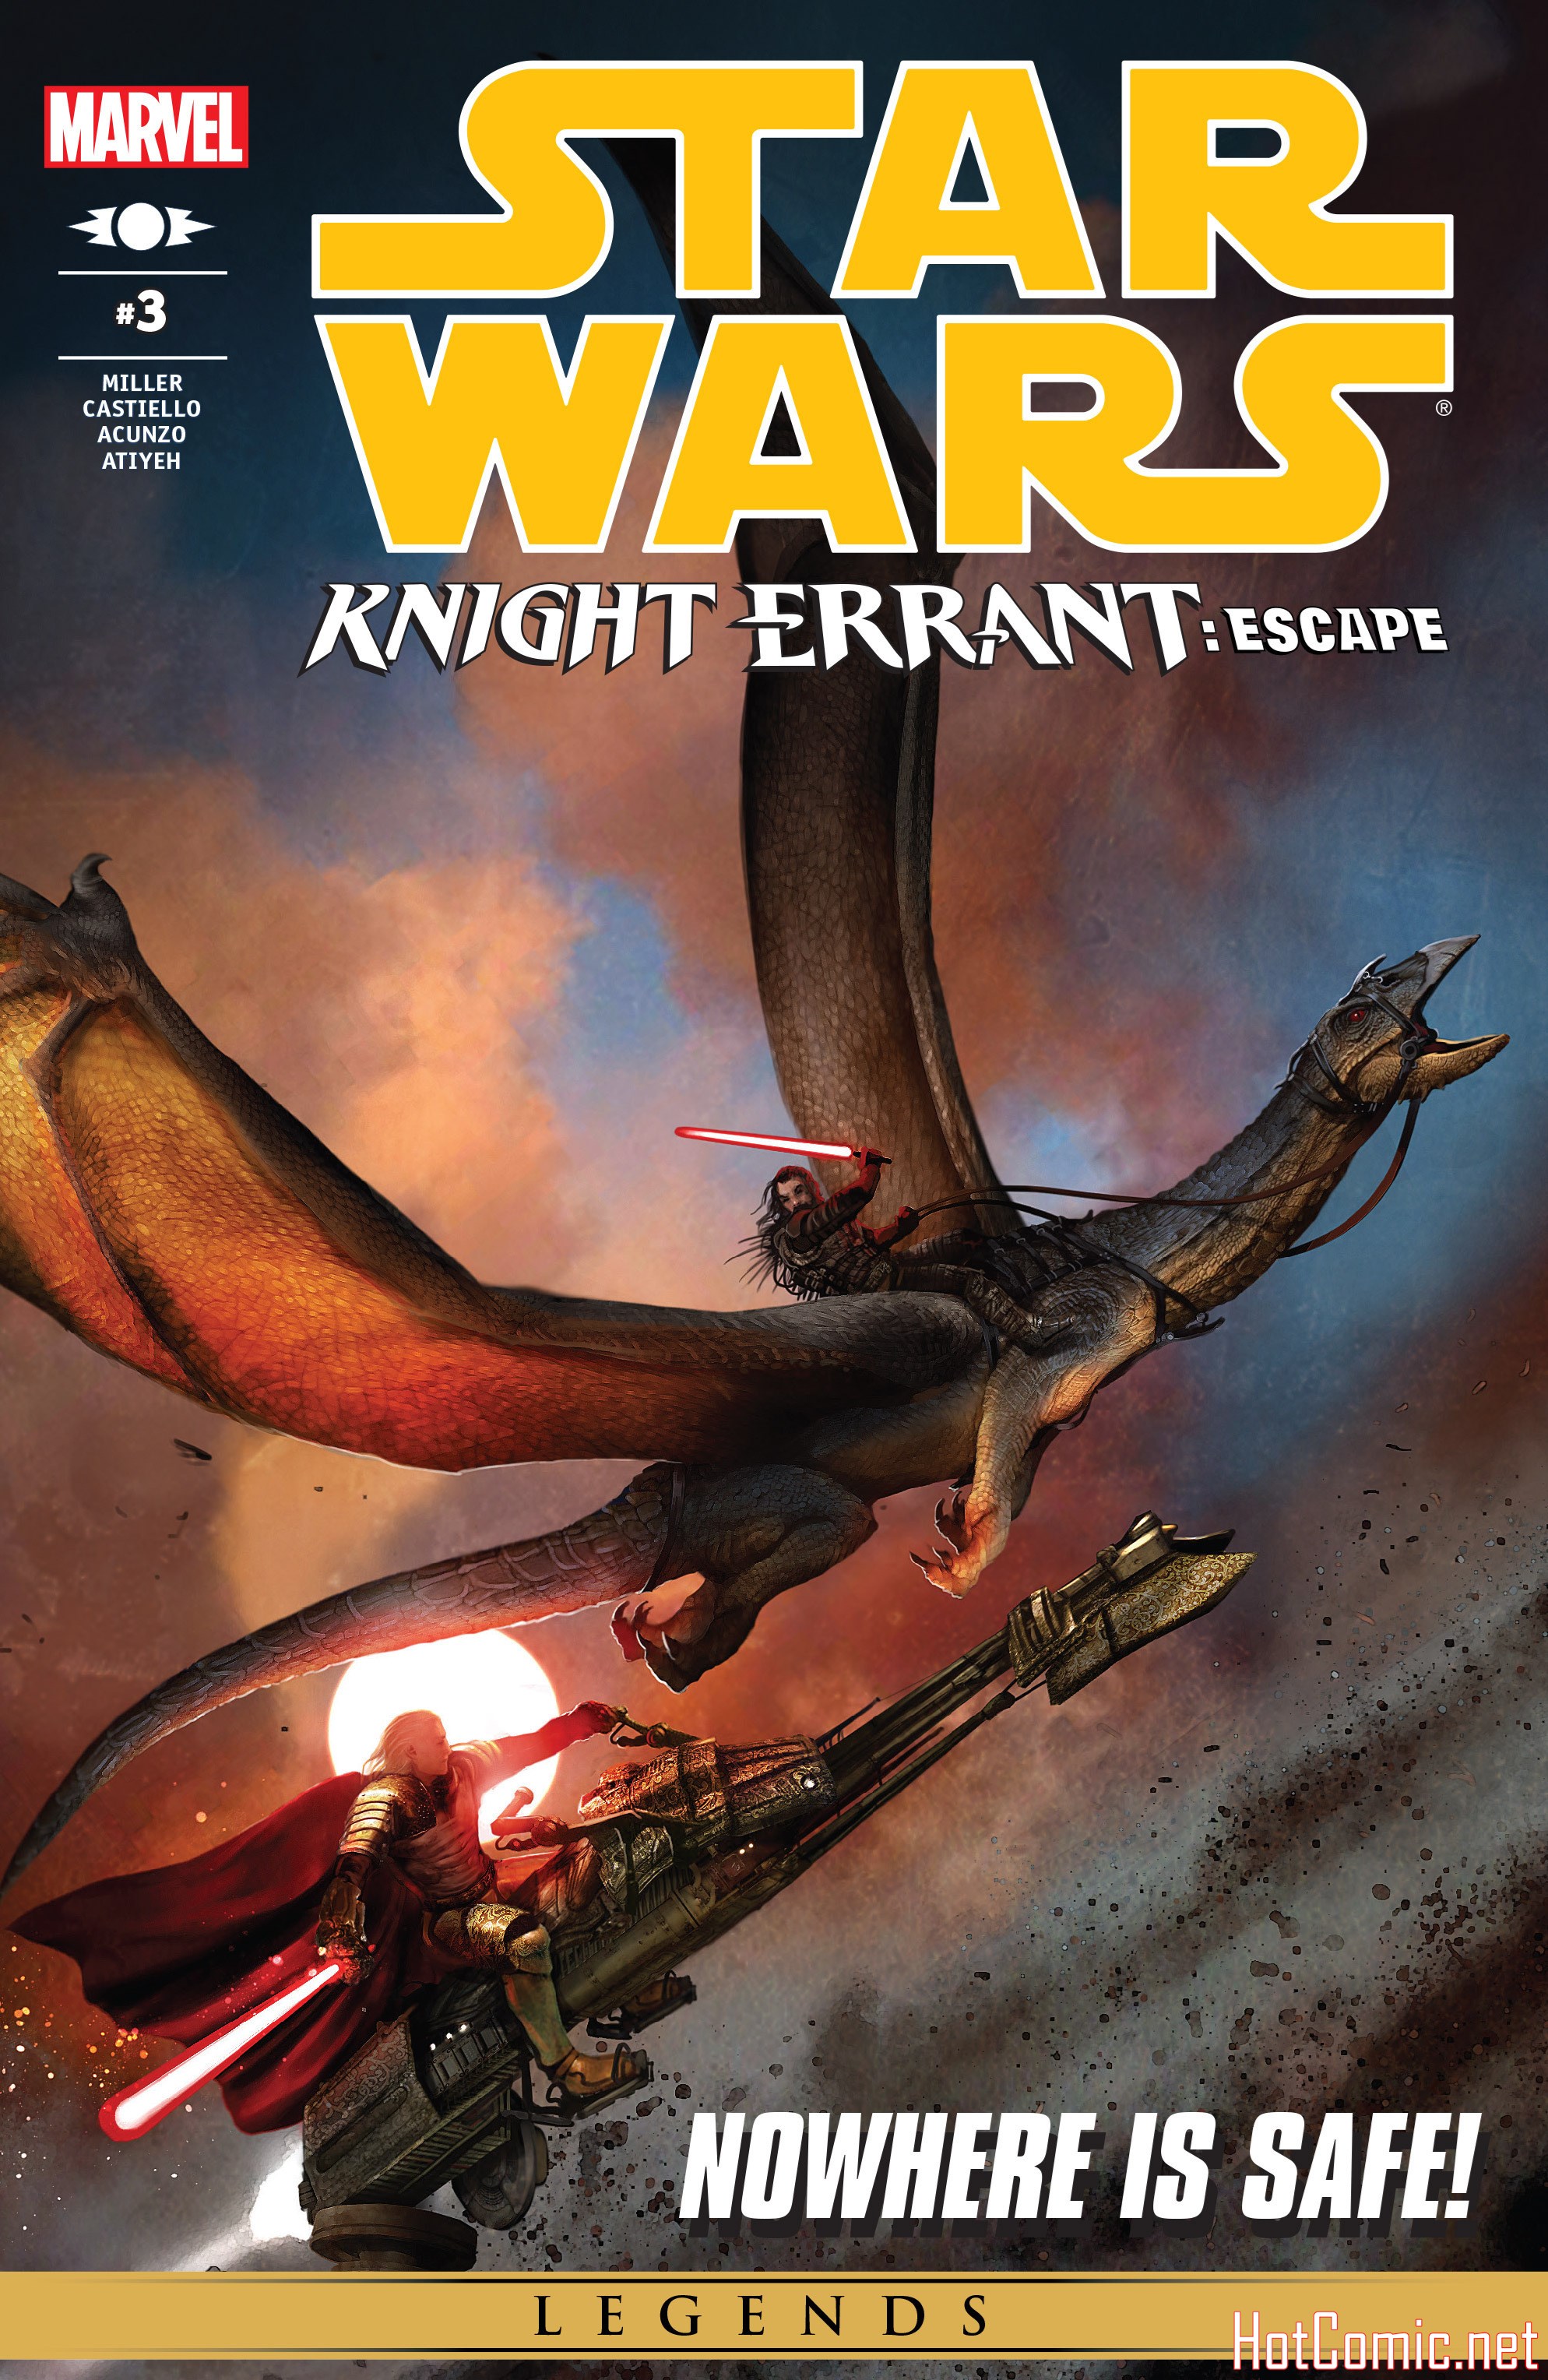 Star Wars: Knight Errant - Escape